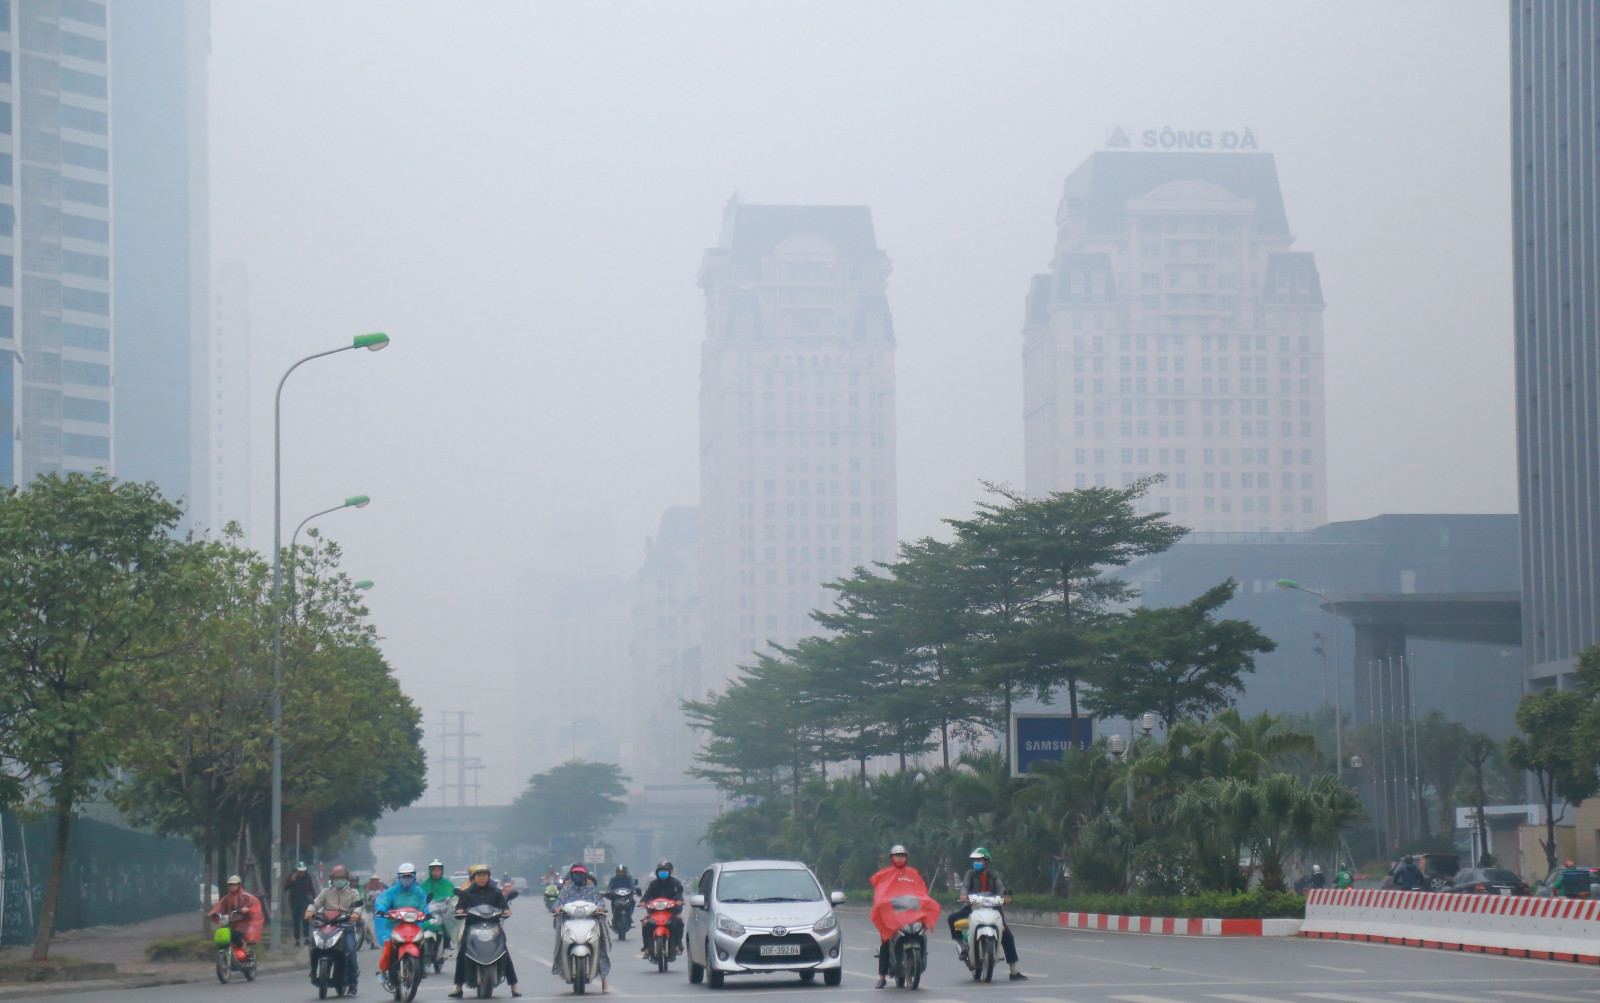 Dự báo thời tiết 28/12: Thanh Hóa có mưa vài nơi, sáng sớm có sương mù nhẹ- Ảnh 1.